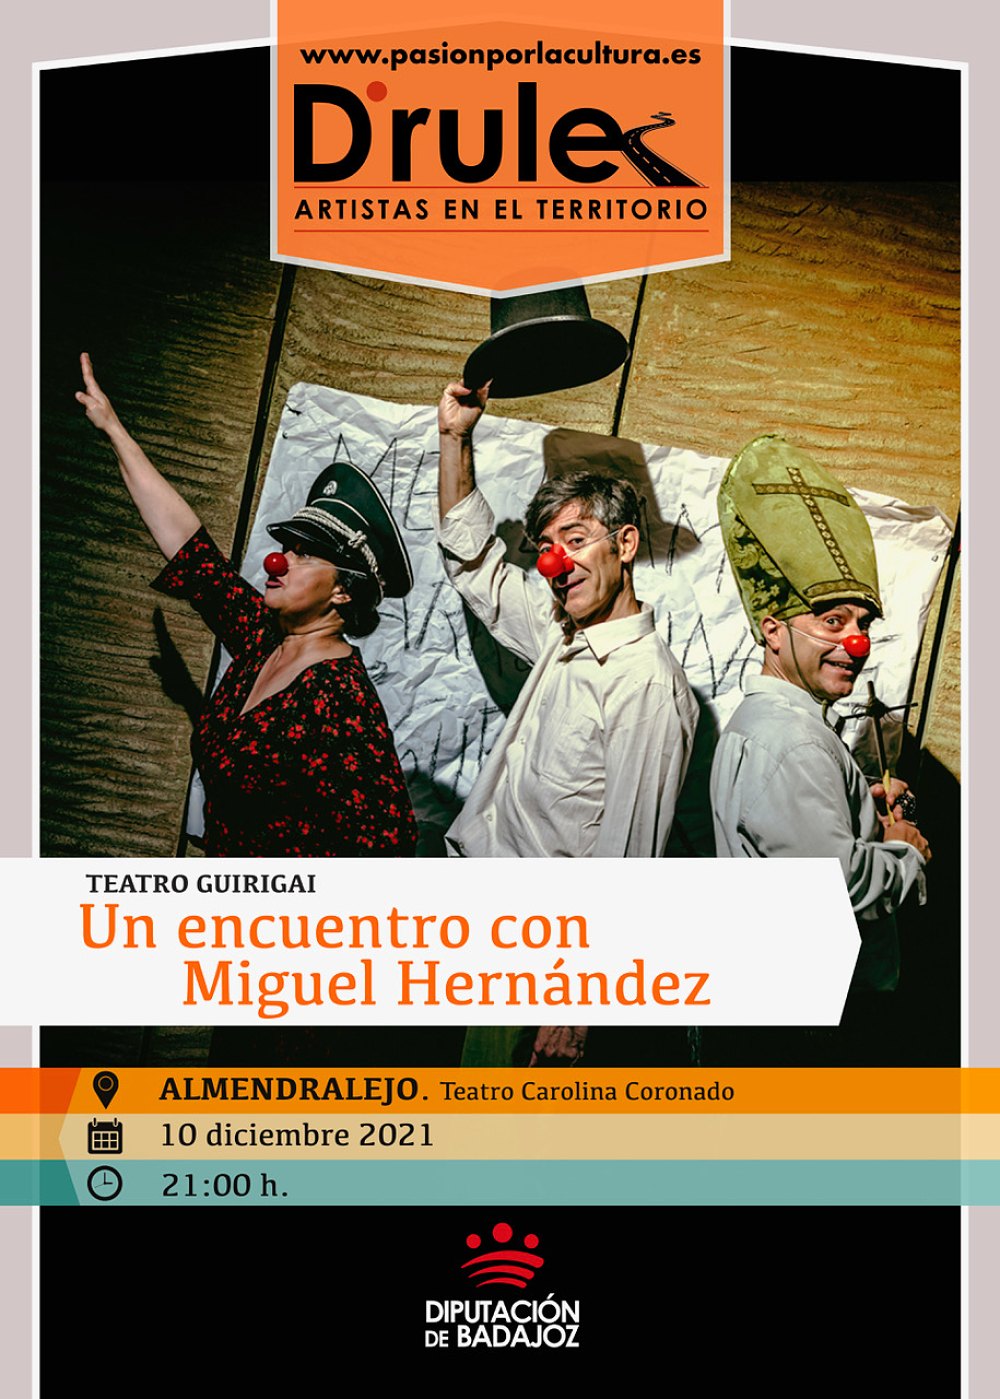 TEATRO | D'Rule 21: «Un encuentro con Miguel Hernández», de Teatro Guirigai